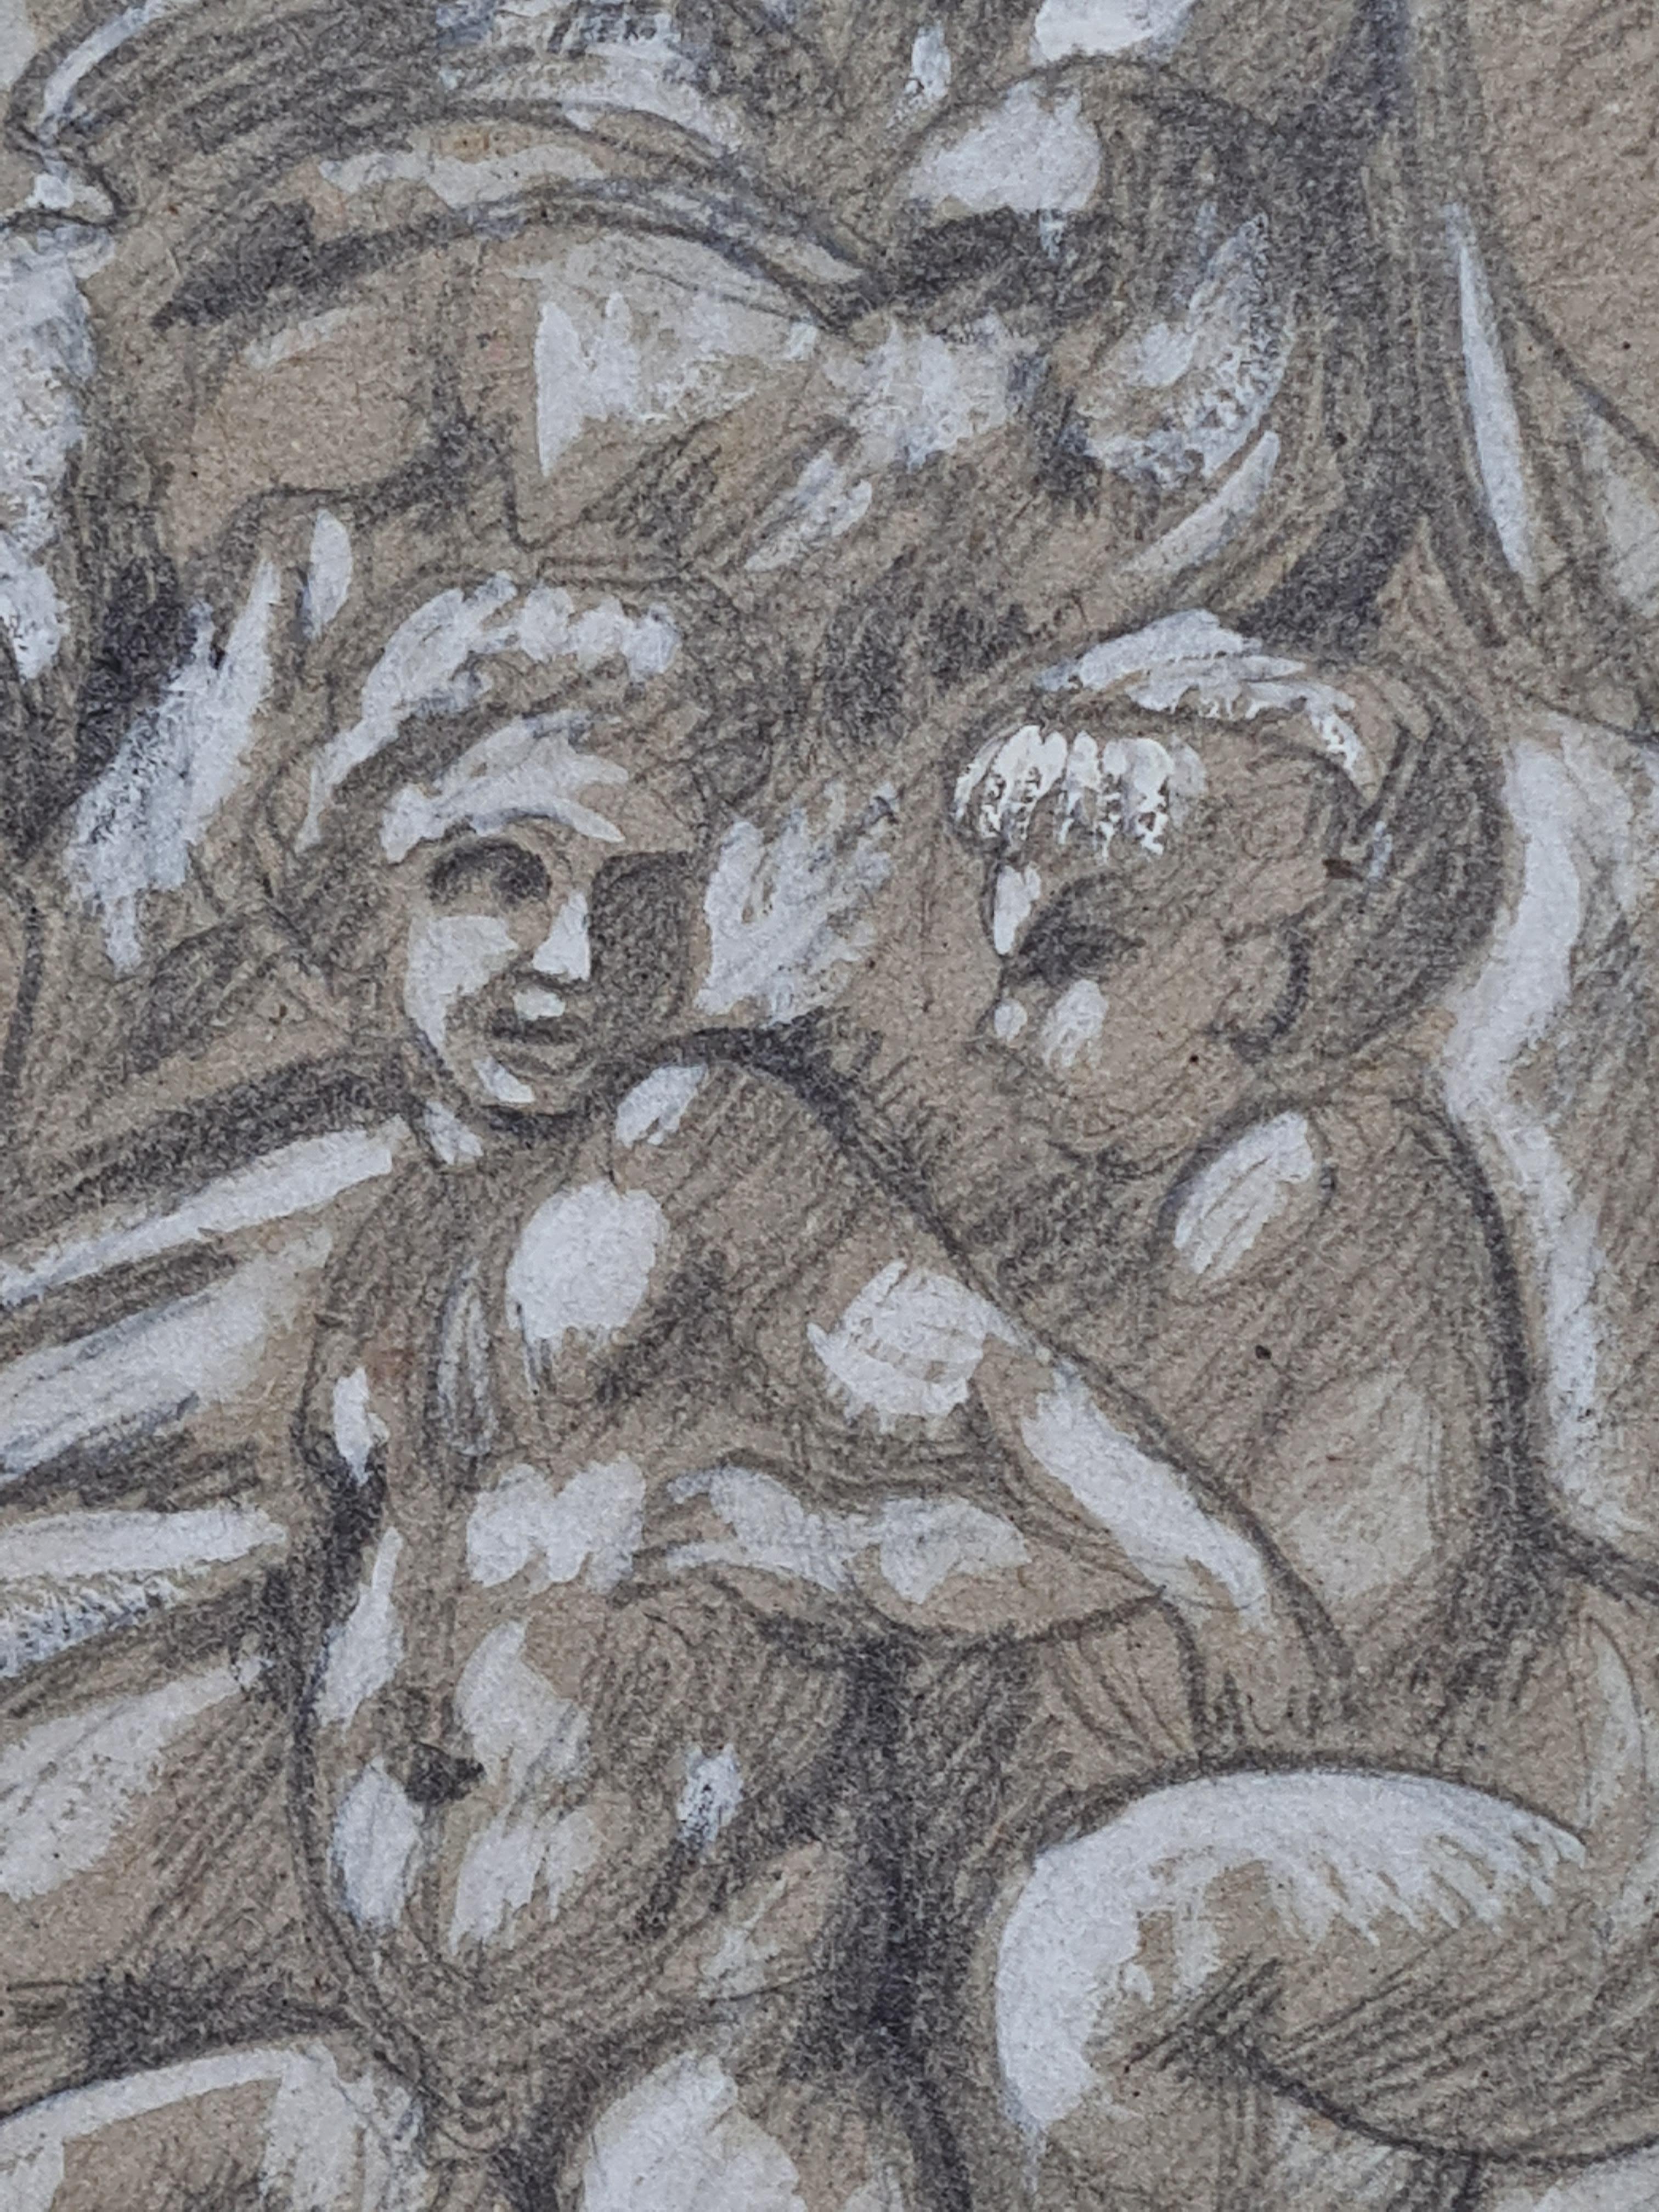 Eine Bleistift- und Aquarellzeichnung einer Madonna mit Putten, inspiriert von den Schnitzereien Michelangelo Buonarrotis. Signiert und datiert unten rechts.

Eine elegante und charmante stilisierte Zeichnung der Medici-Madonna von Michelangelo mit